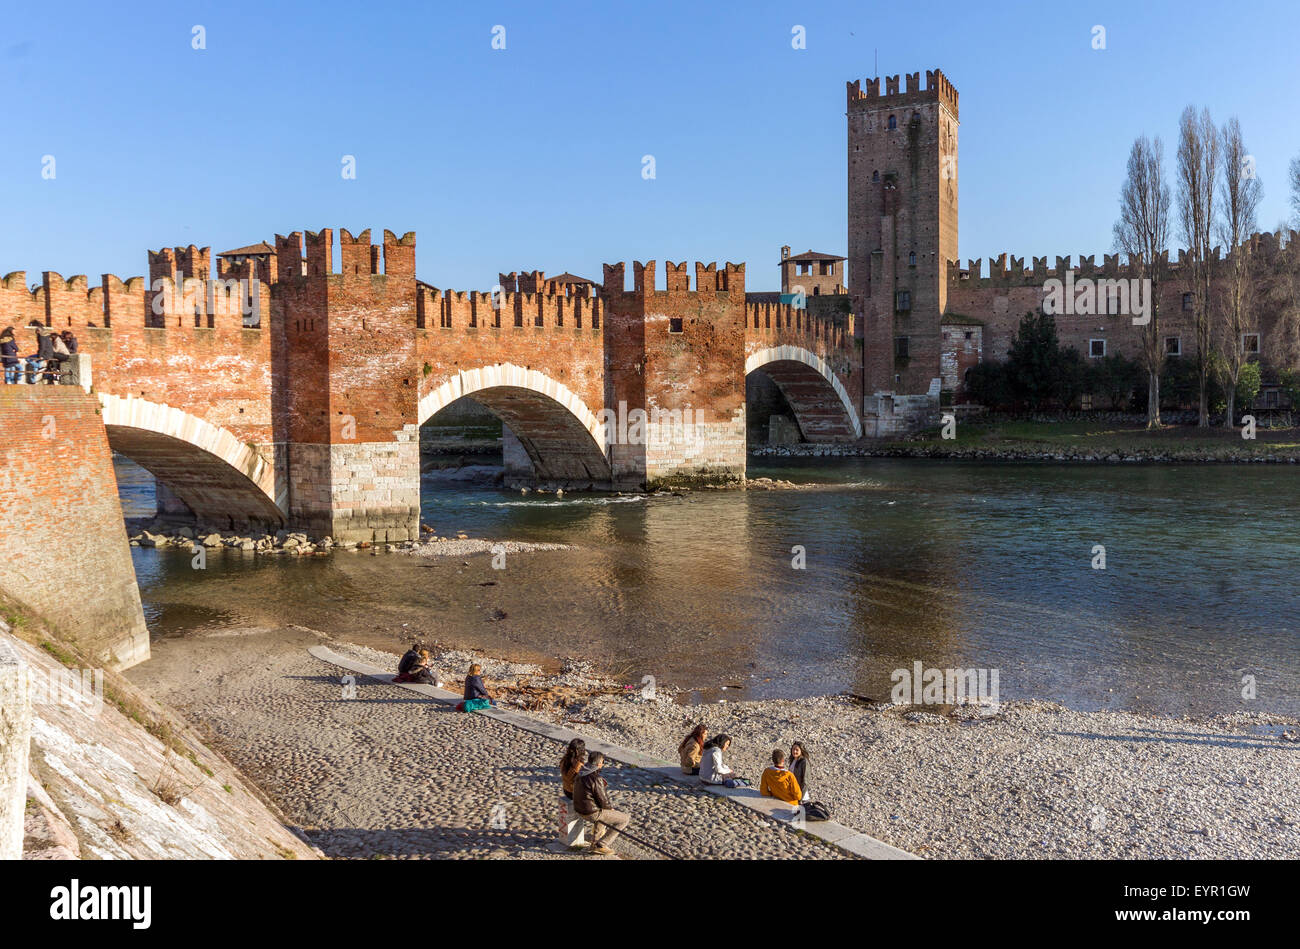 Italy, Veneto, Verona, the Scaligero bridge Stock Photo